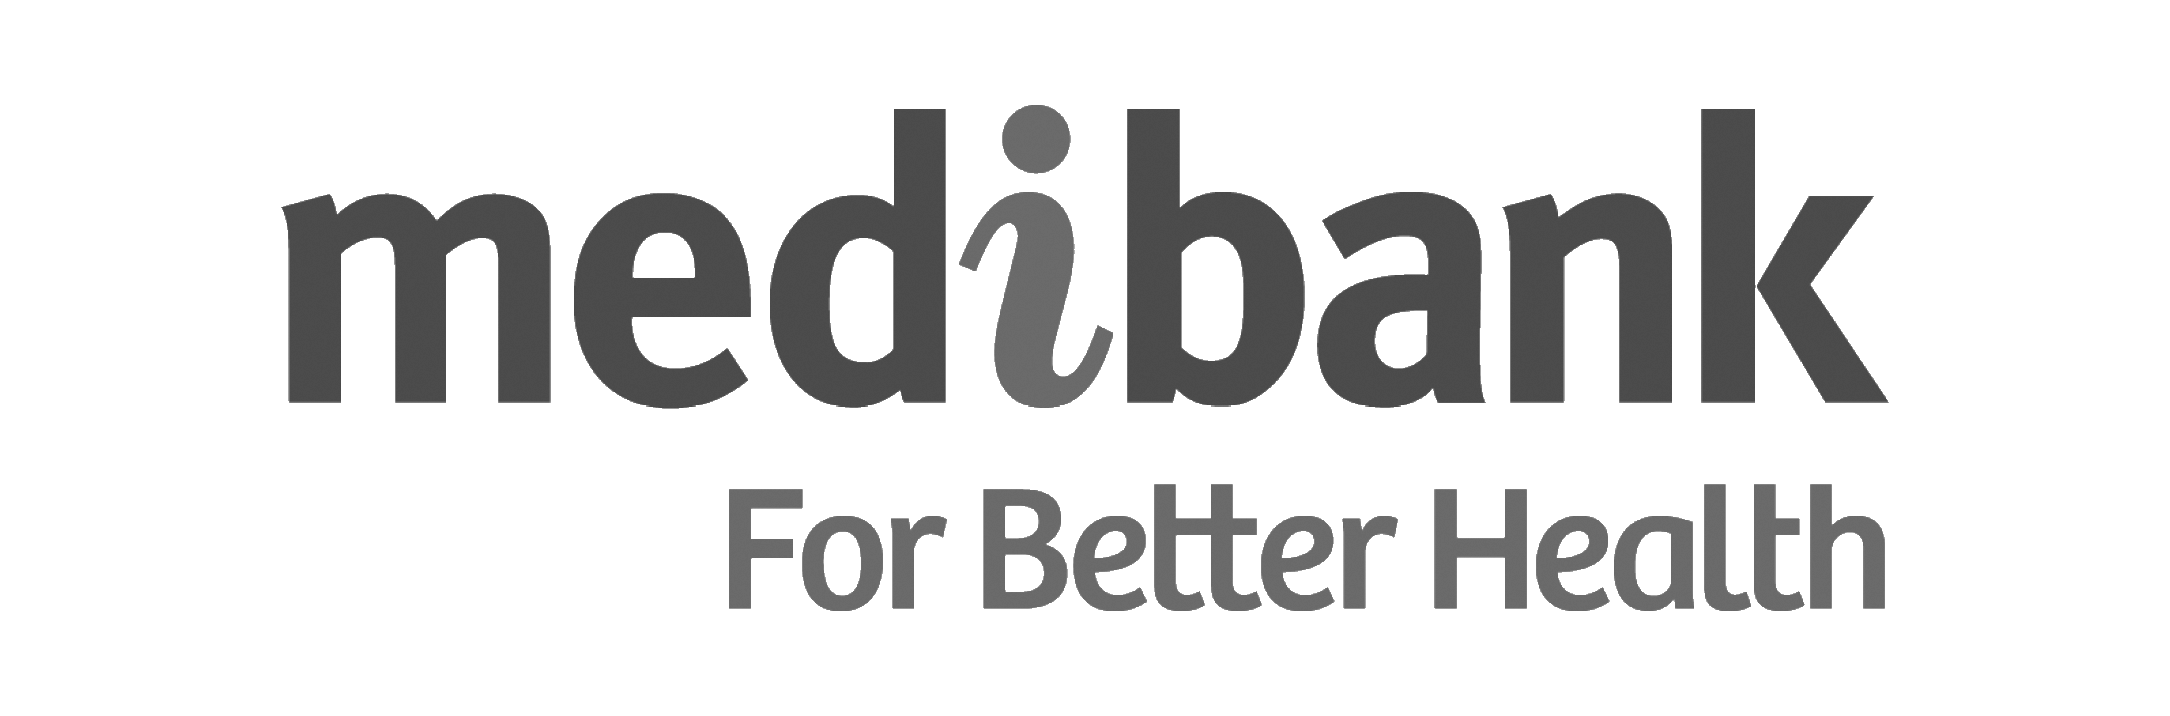 Medibank for better health